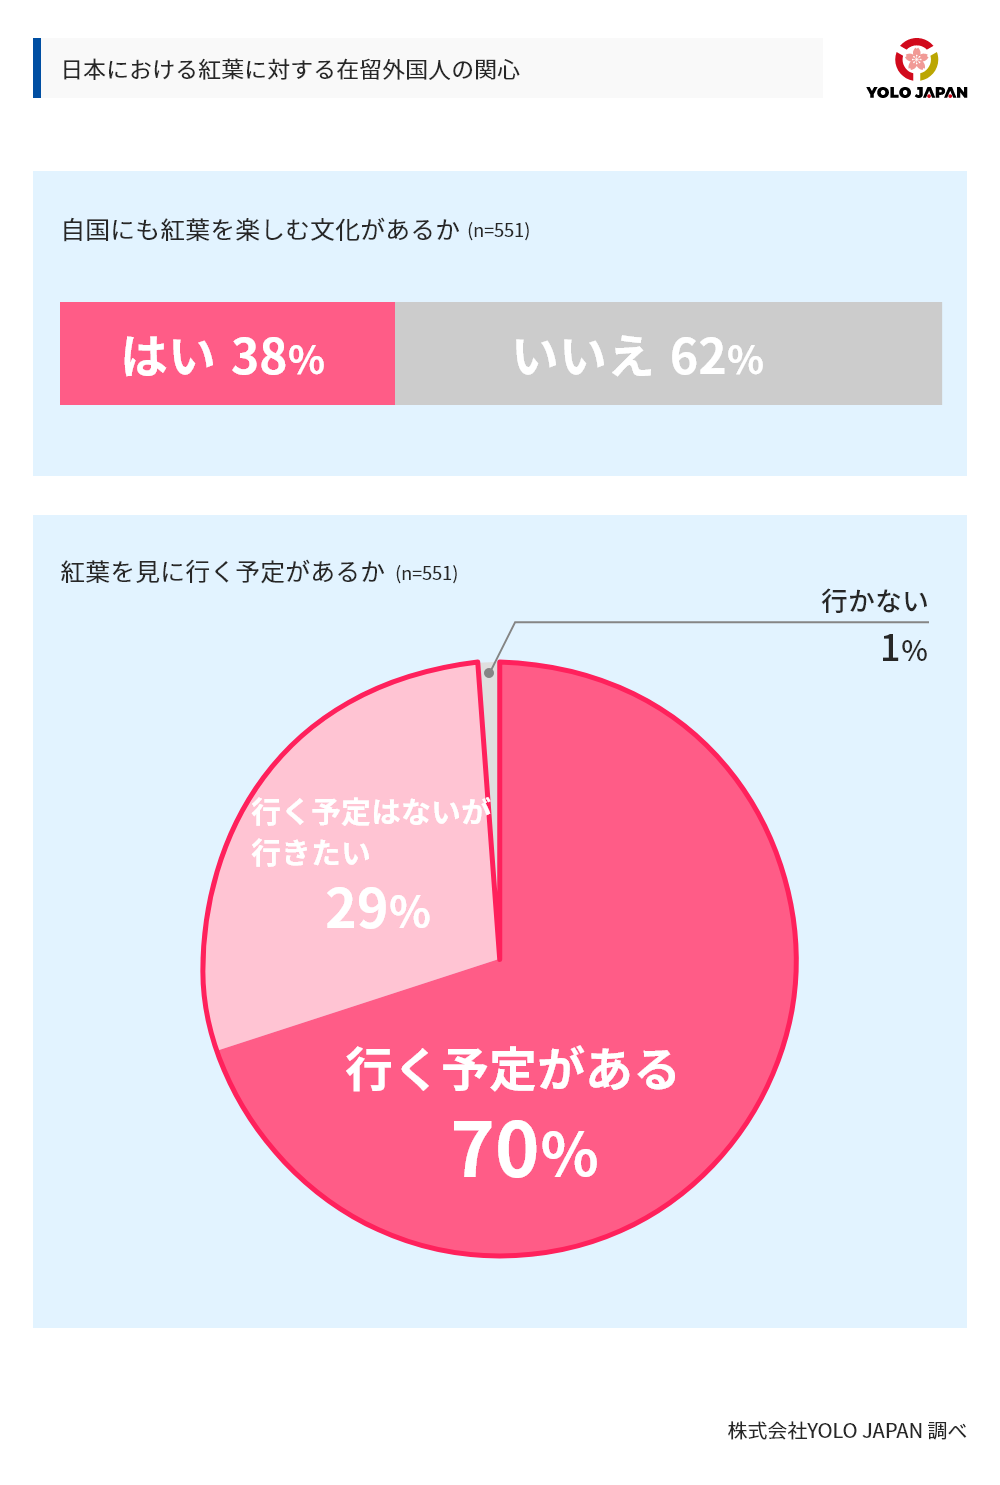 日本における紅葉に対する在留外国人の関心に対するアンケート調査結果。母数は551で、「自国にも紅葉を楽しむ文化があるか」という設問に対し、はいと答えたのは38％、いいえと答えたのは62％であった。また、紅葉を見に行く予定があるかという設問に対しては、行く予定があるまたは行く予定はないが行きたいと答えたのが99％で、行かないと答えたのは1％であった。